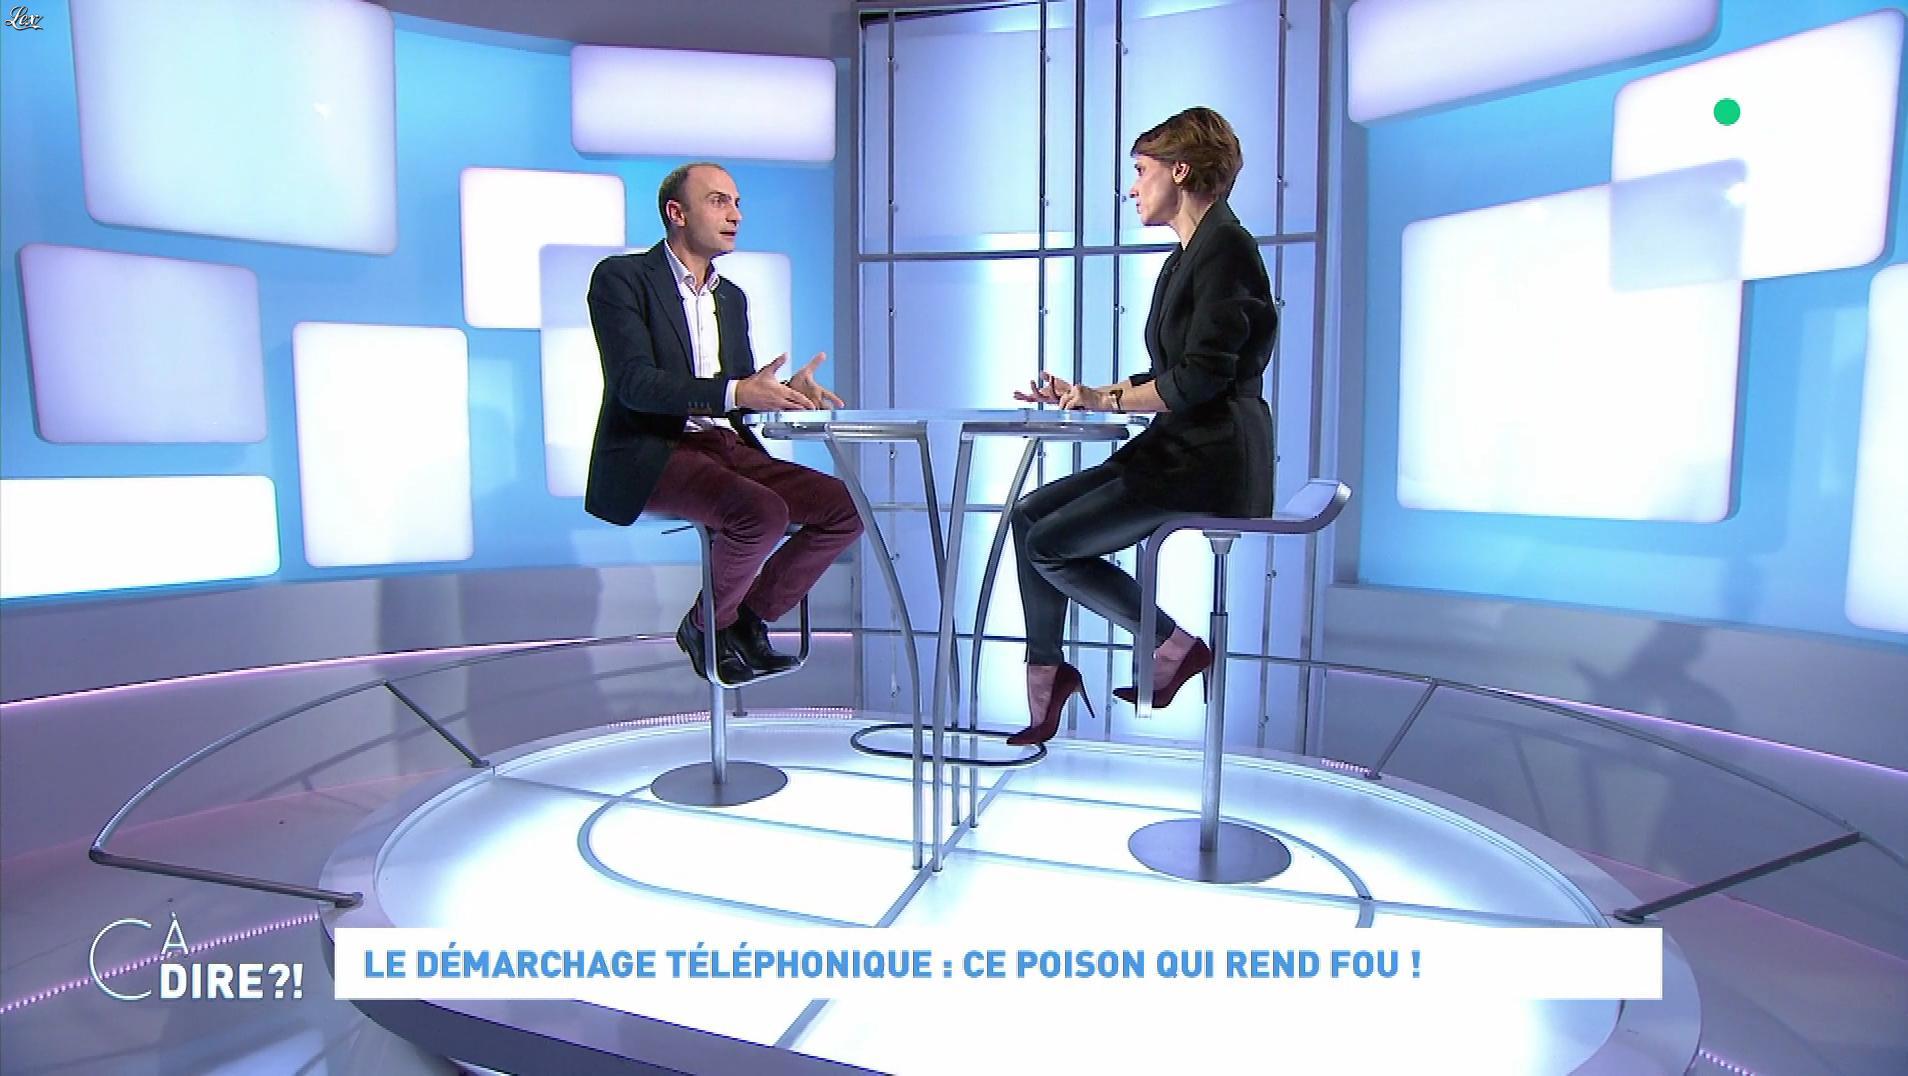 Mélanie Taravant dans C à Dire. Diffusé à la télévision le 20/01/20.